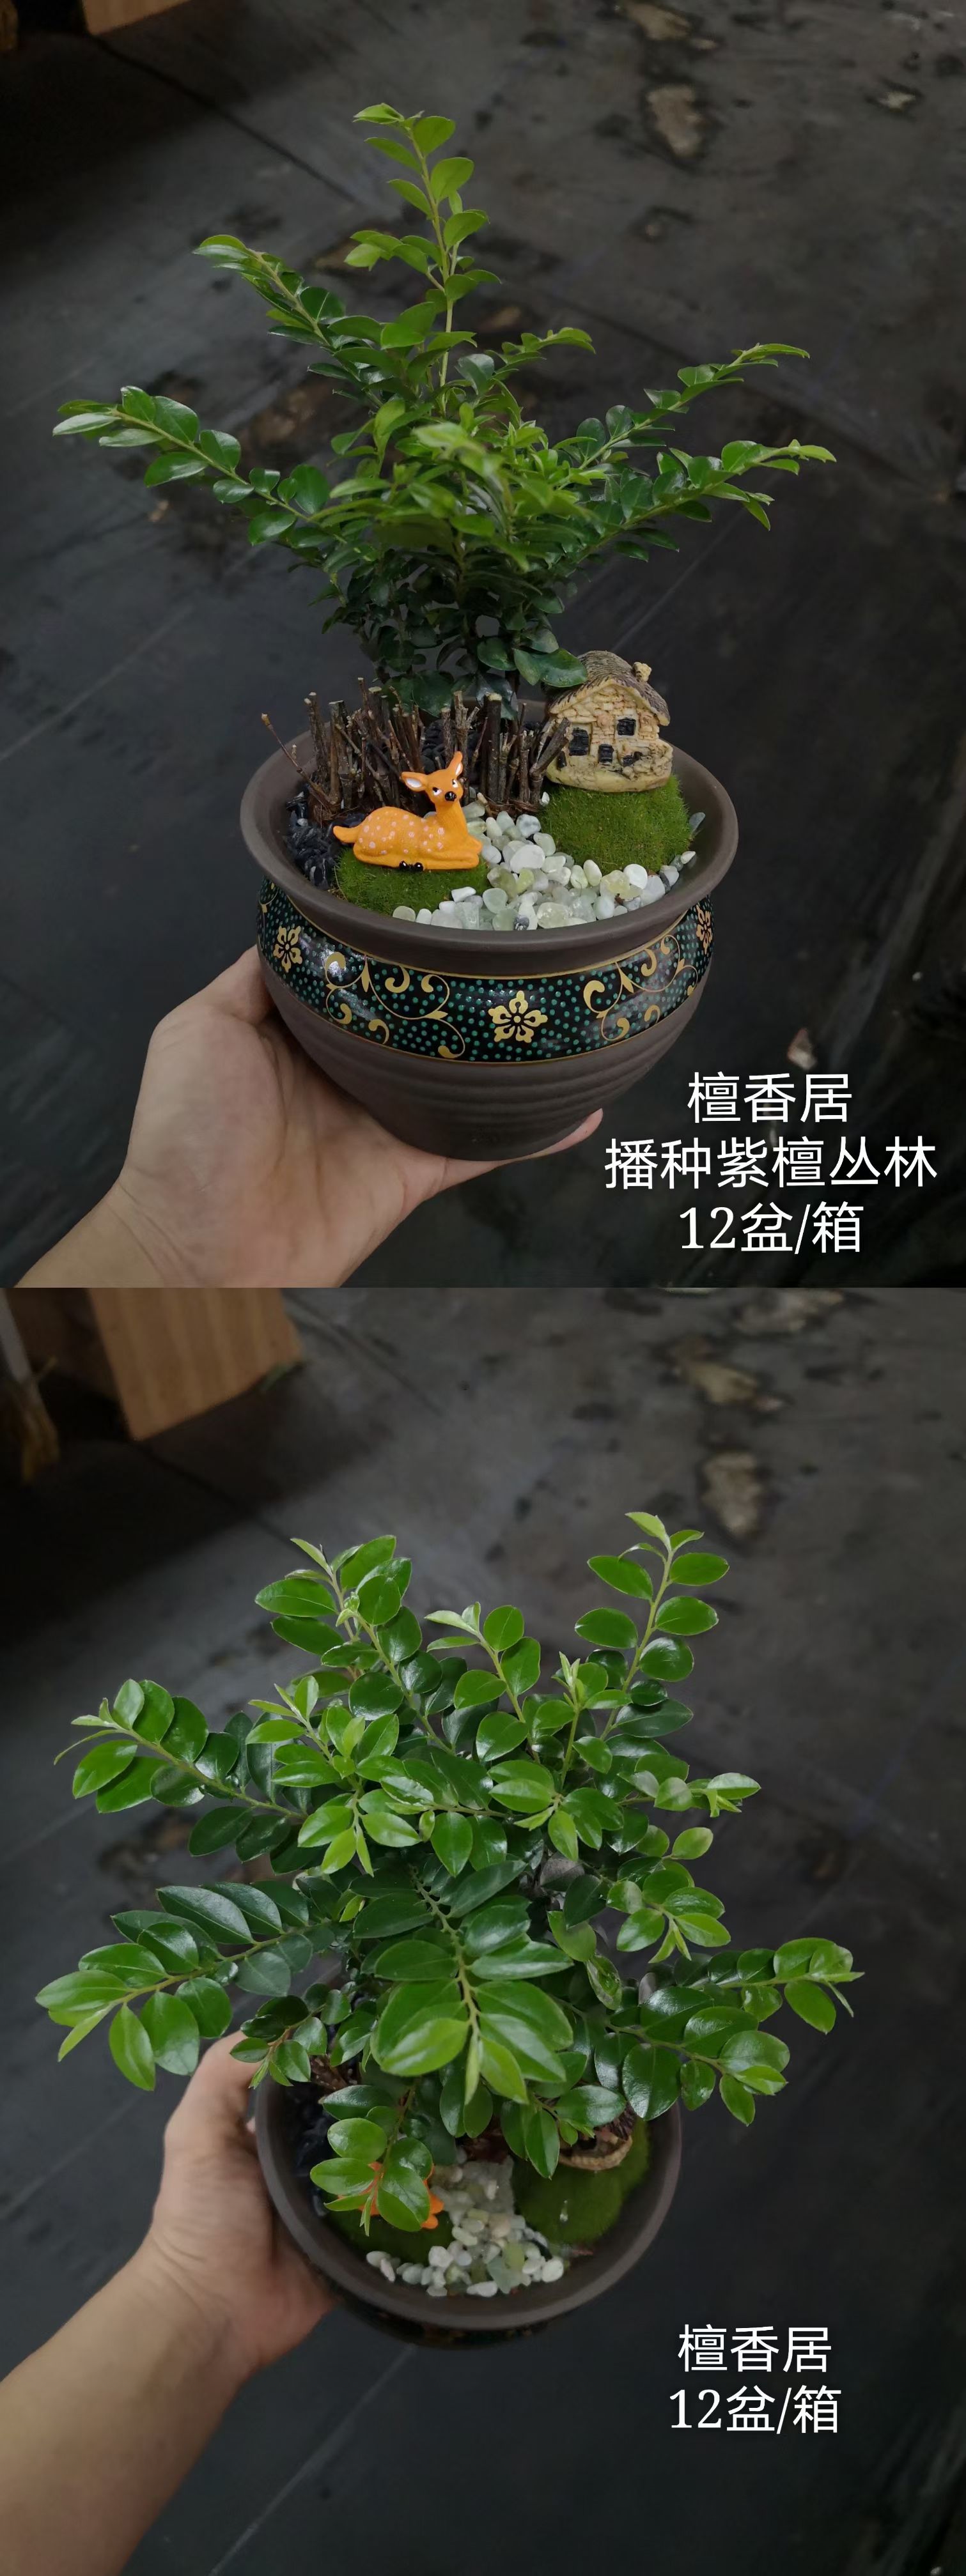 广州小叶紫檀盆栽 紫檀陶瓷盆景